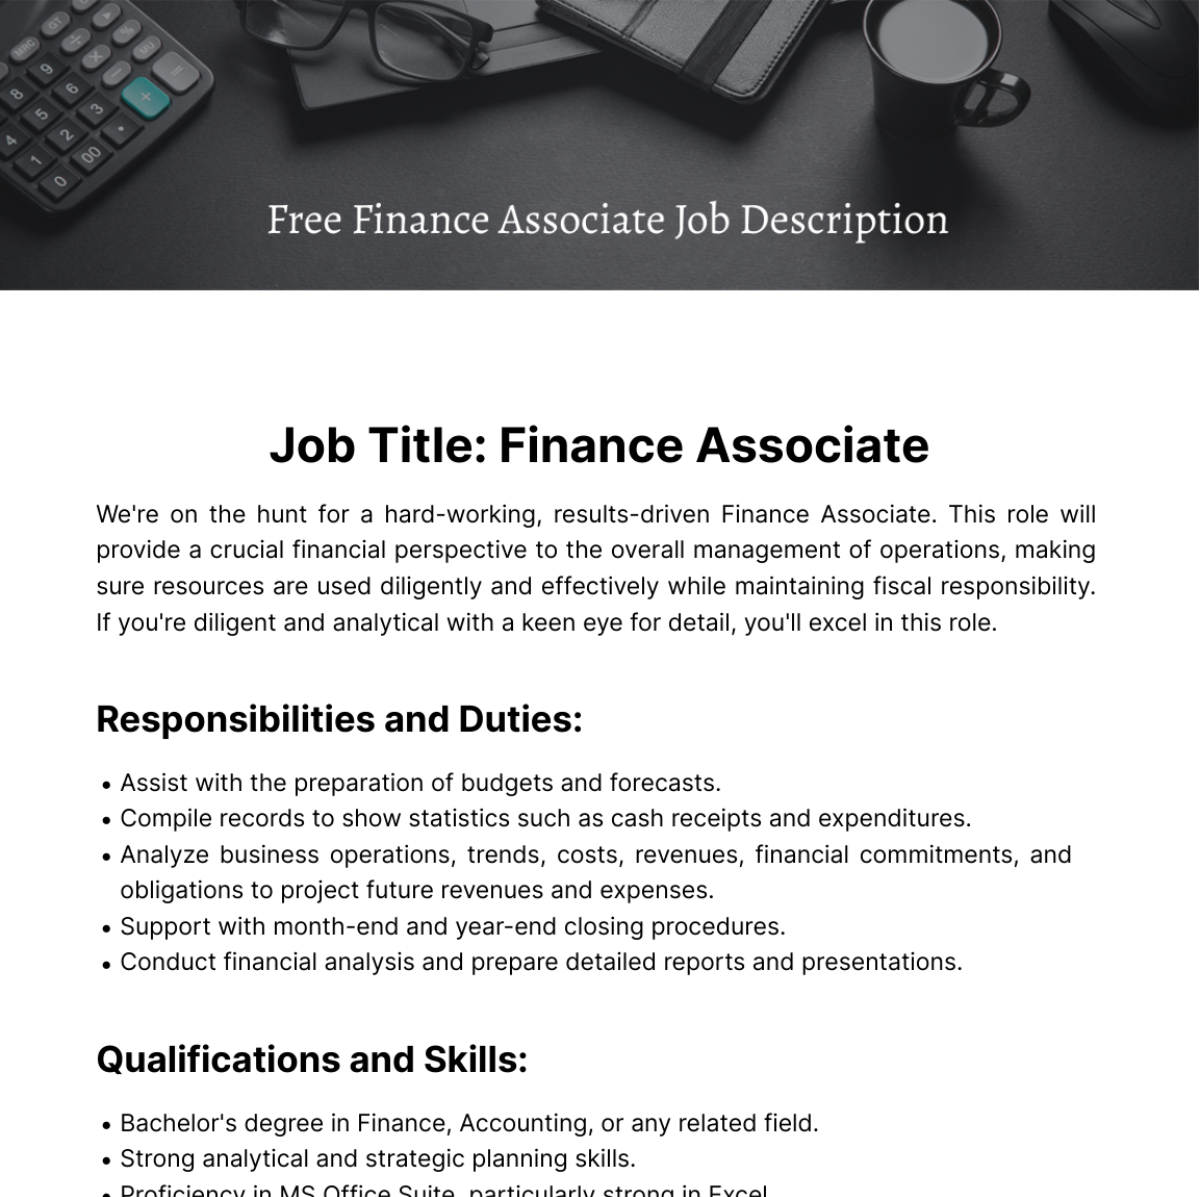 Finance Associate Job Description Template